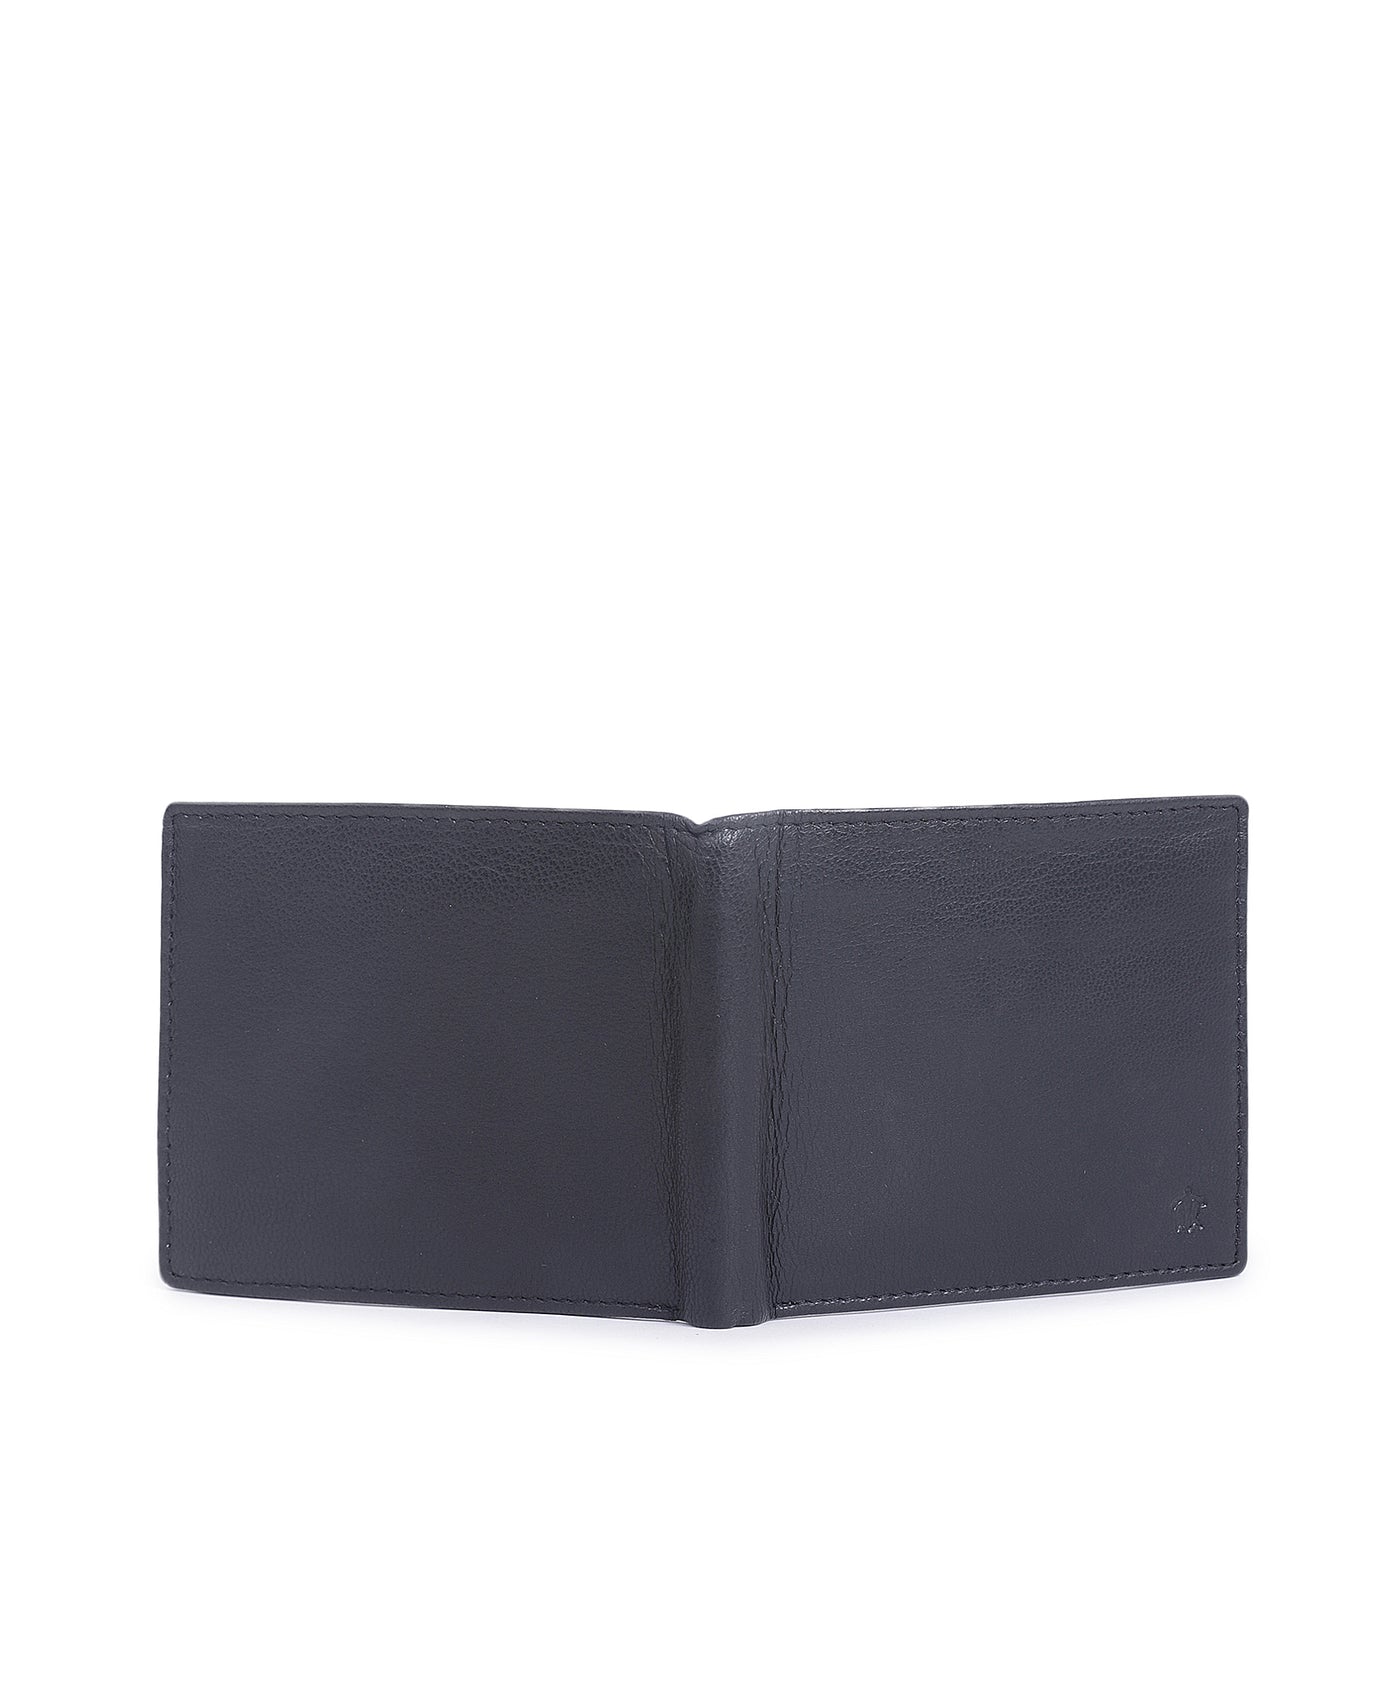 Leather Black Solid Regular Formal Wallets